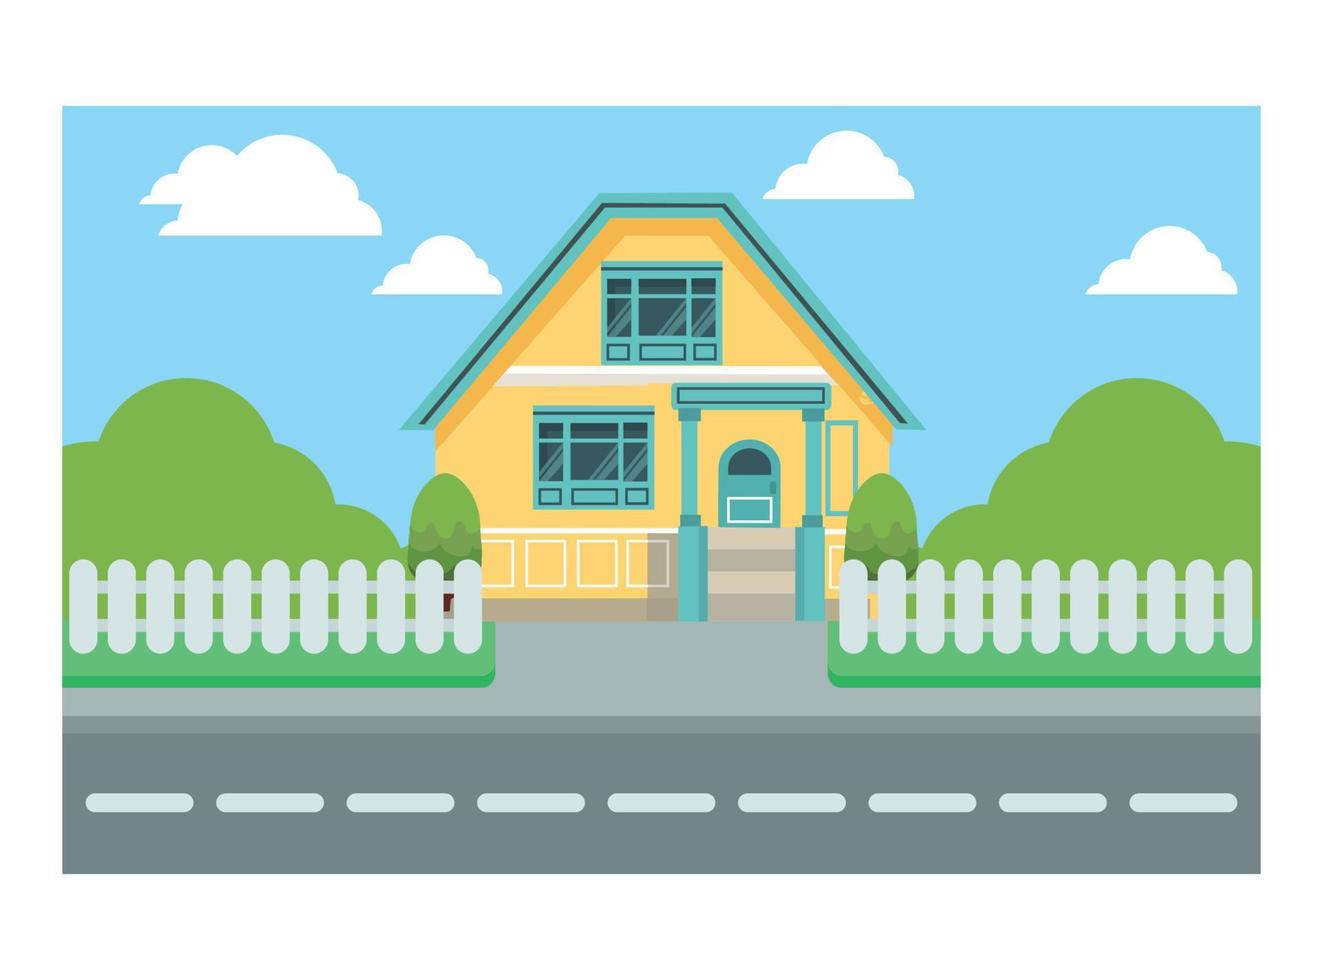 ilustração plana de andar de bicicleta pelas casas com amigos e familiares. ilustração vetorial adequada para diagramas, infográficos e outros ativos gráficos vetor